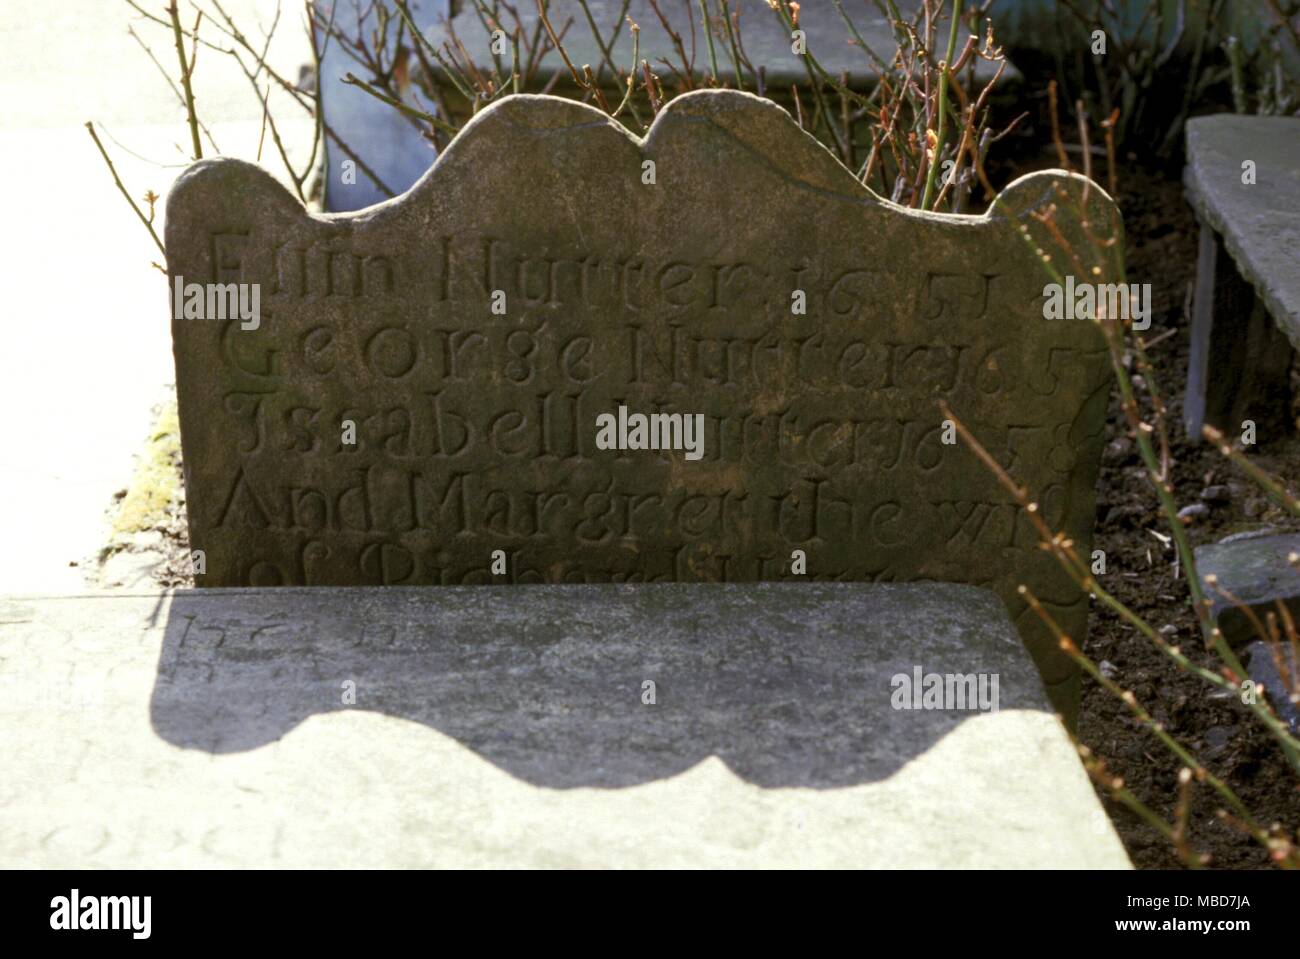 Grave rivendicato per contrassegnare il luogo di sepoltura di una delle streghe provato nel famoso Pendle streghe prove (1612-13). Foto Stock